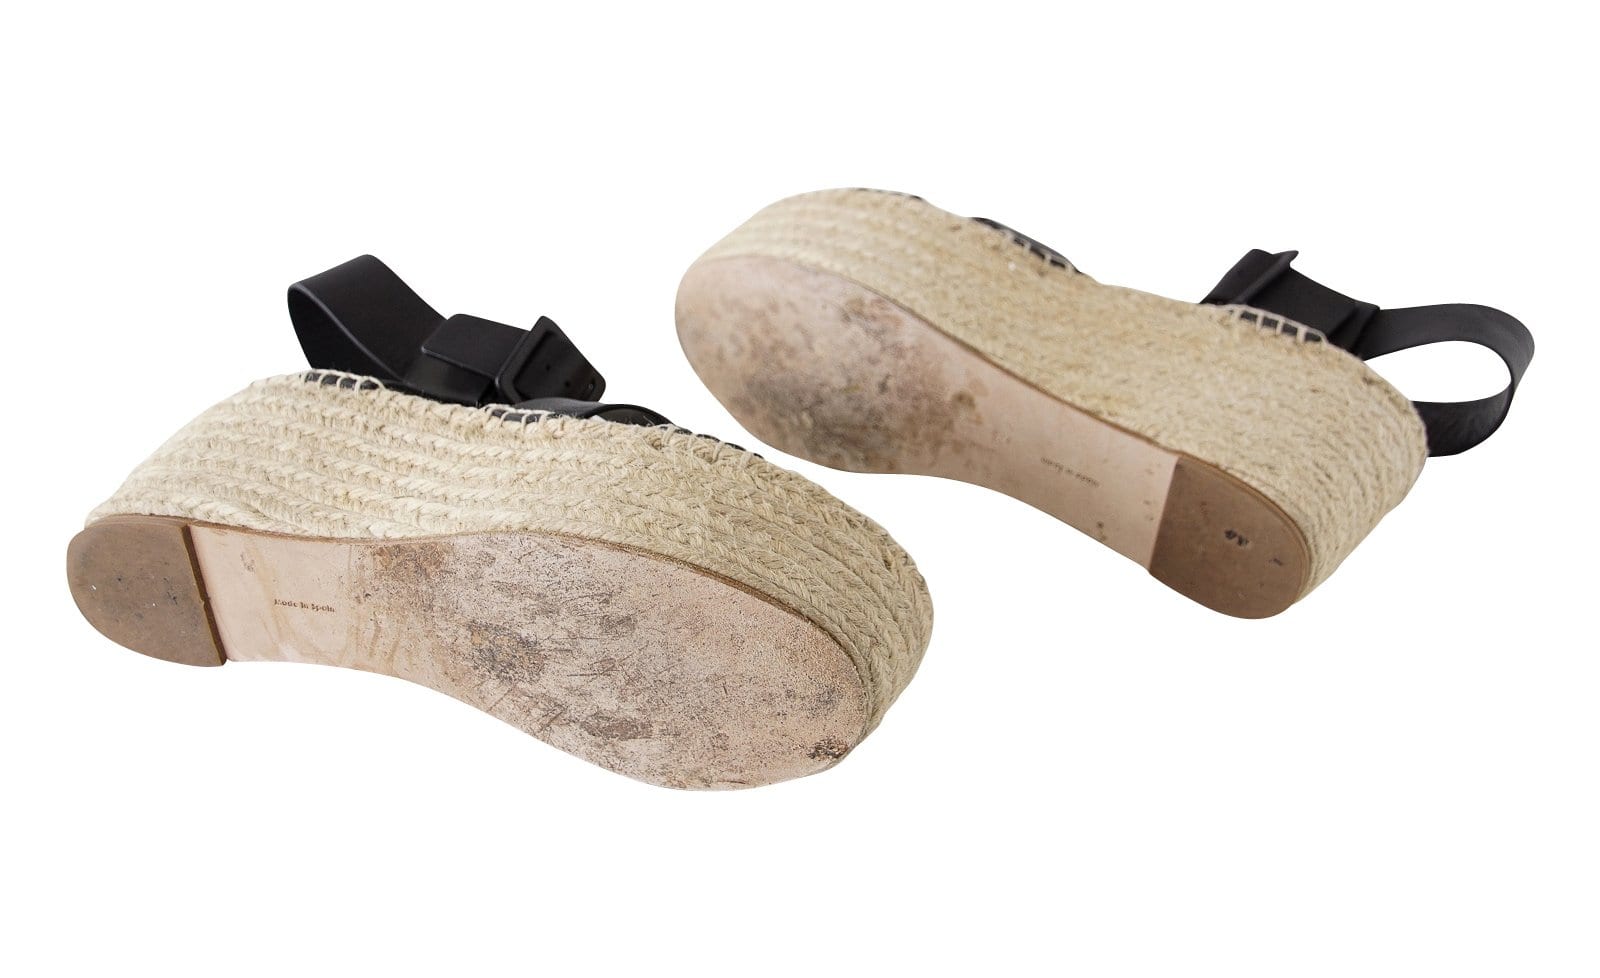 Celine Shoe Wedge Black Ankle Strap Platform Sandal 39 / 9 - mightychic